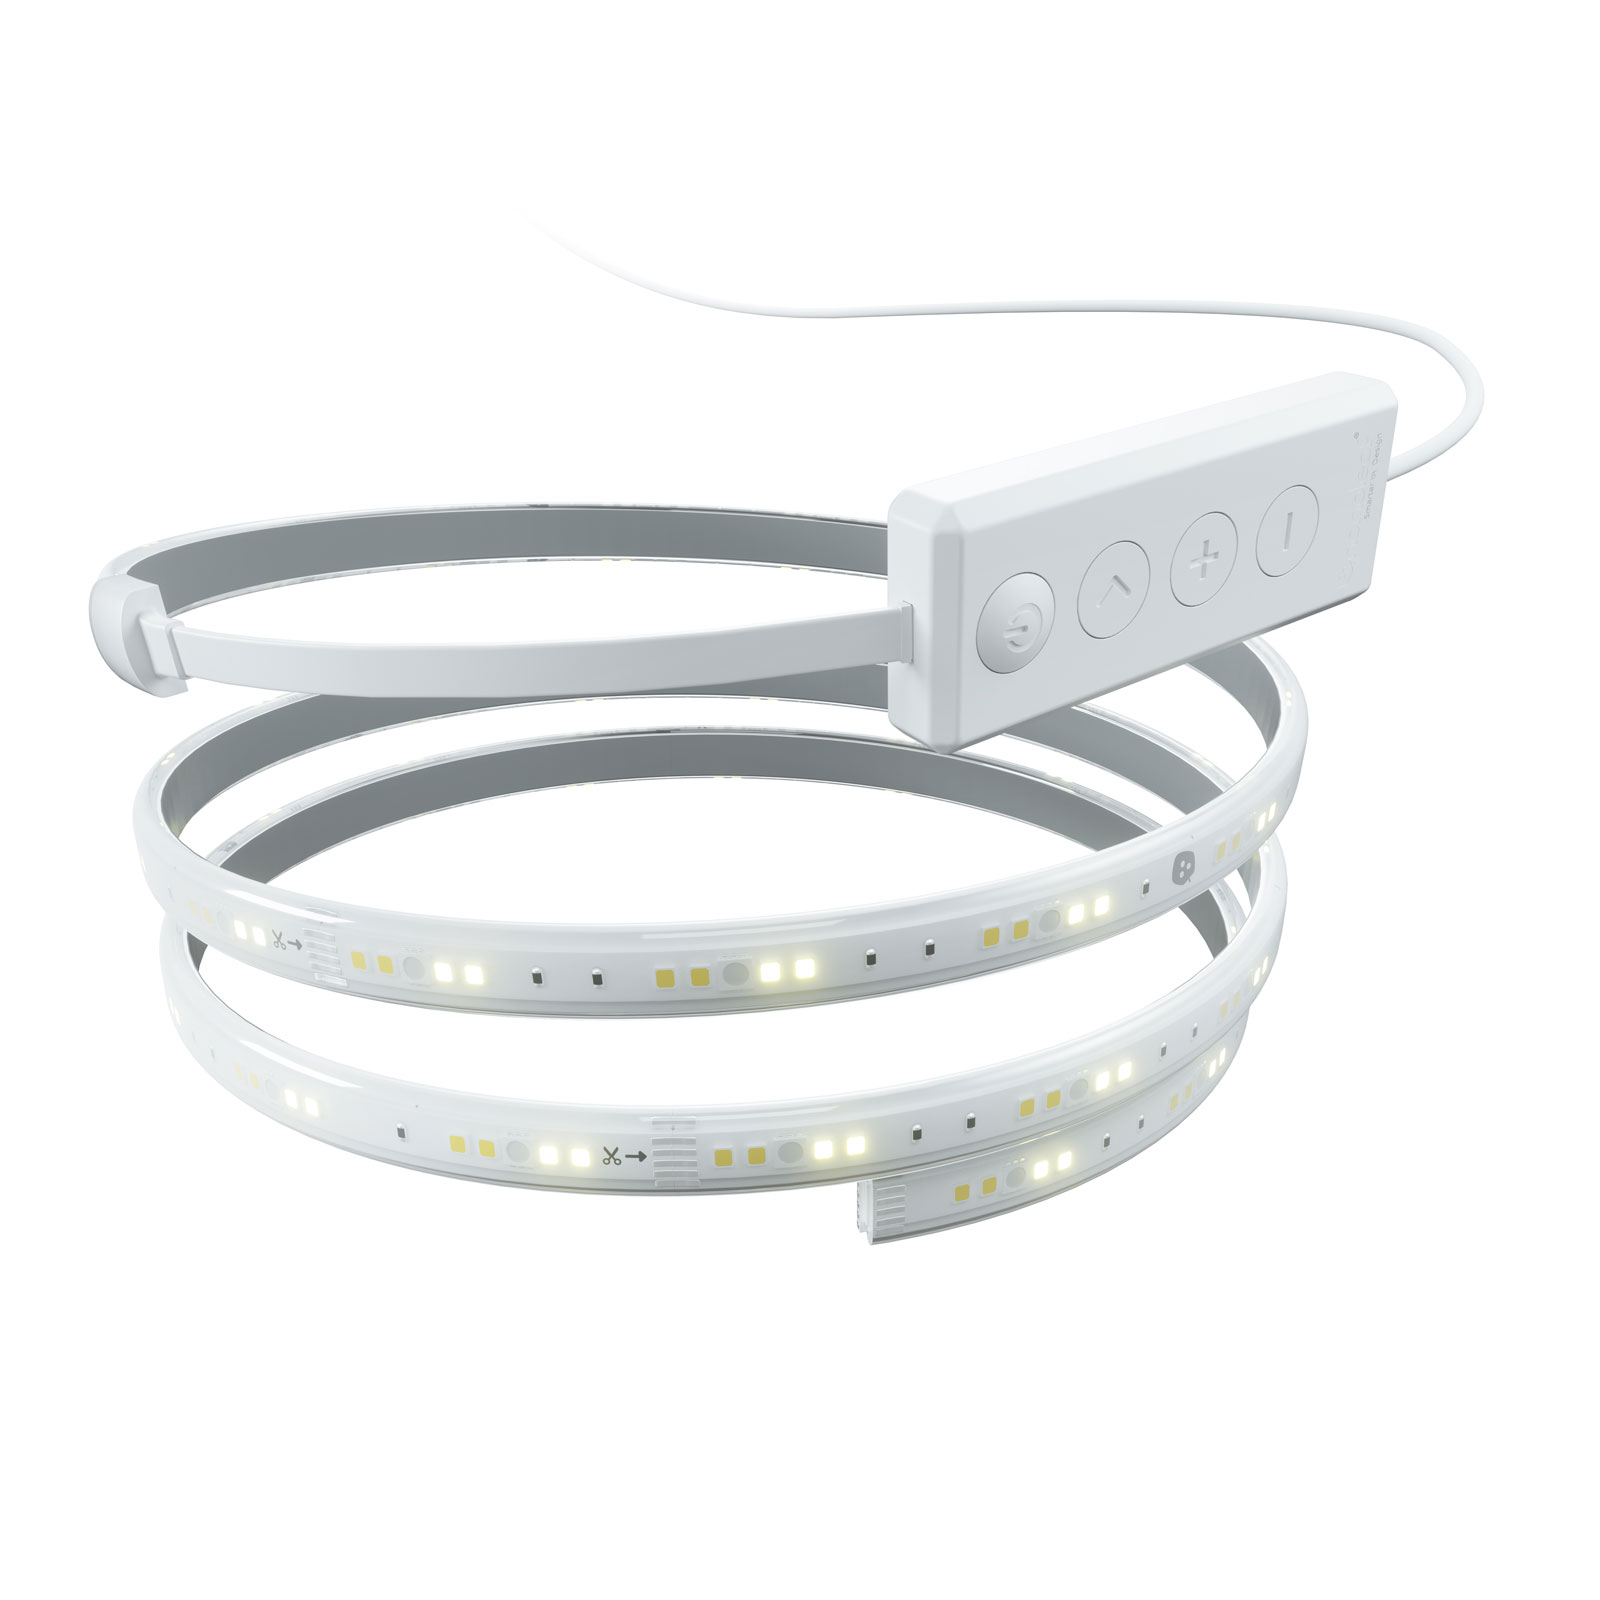 Nanoleaf Essentials LED Light Strip Starter Kit 2m